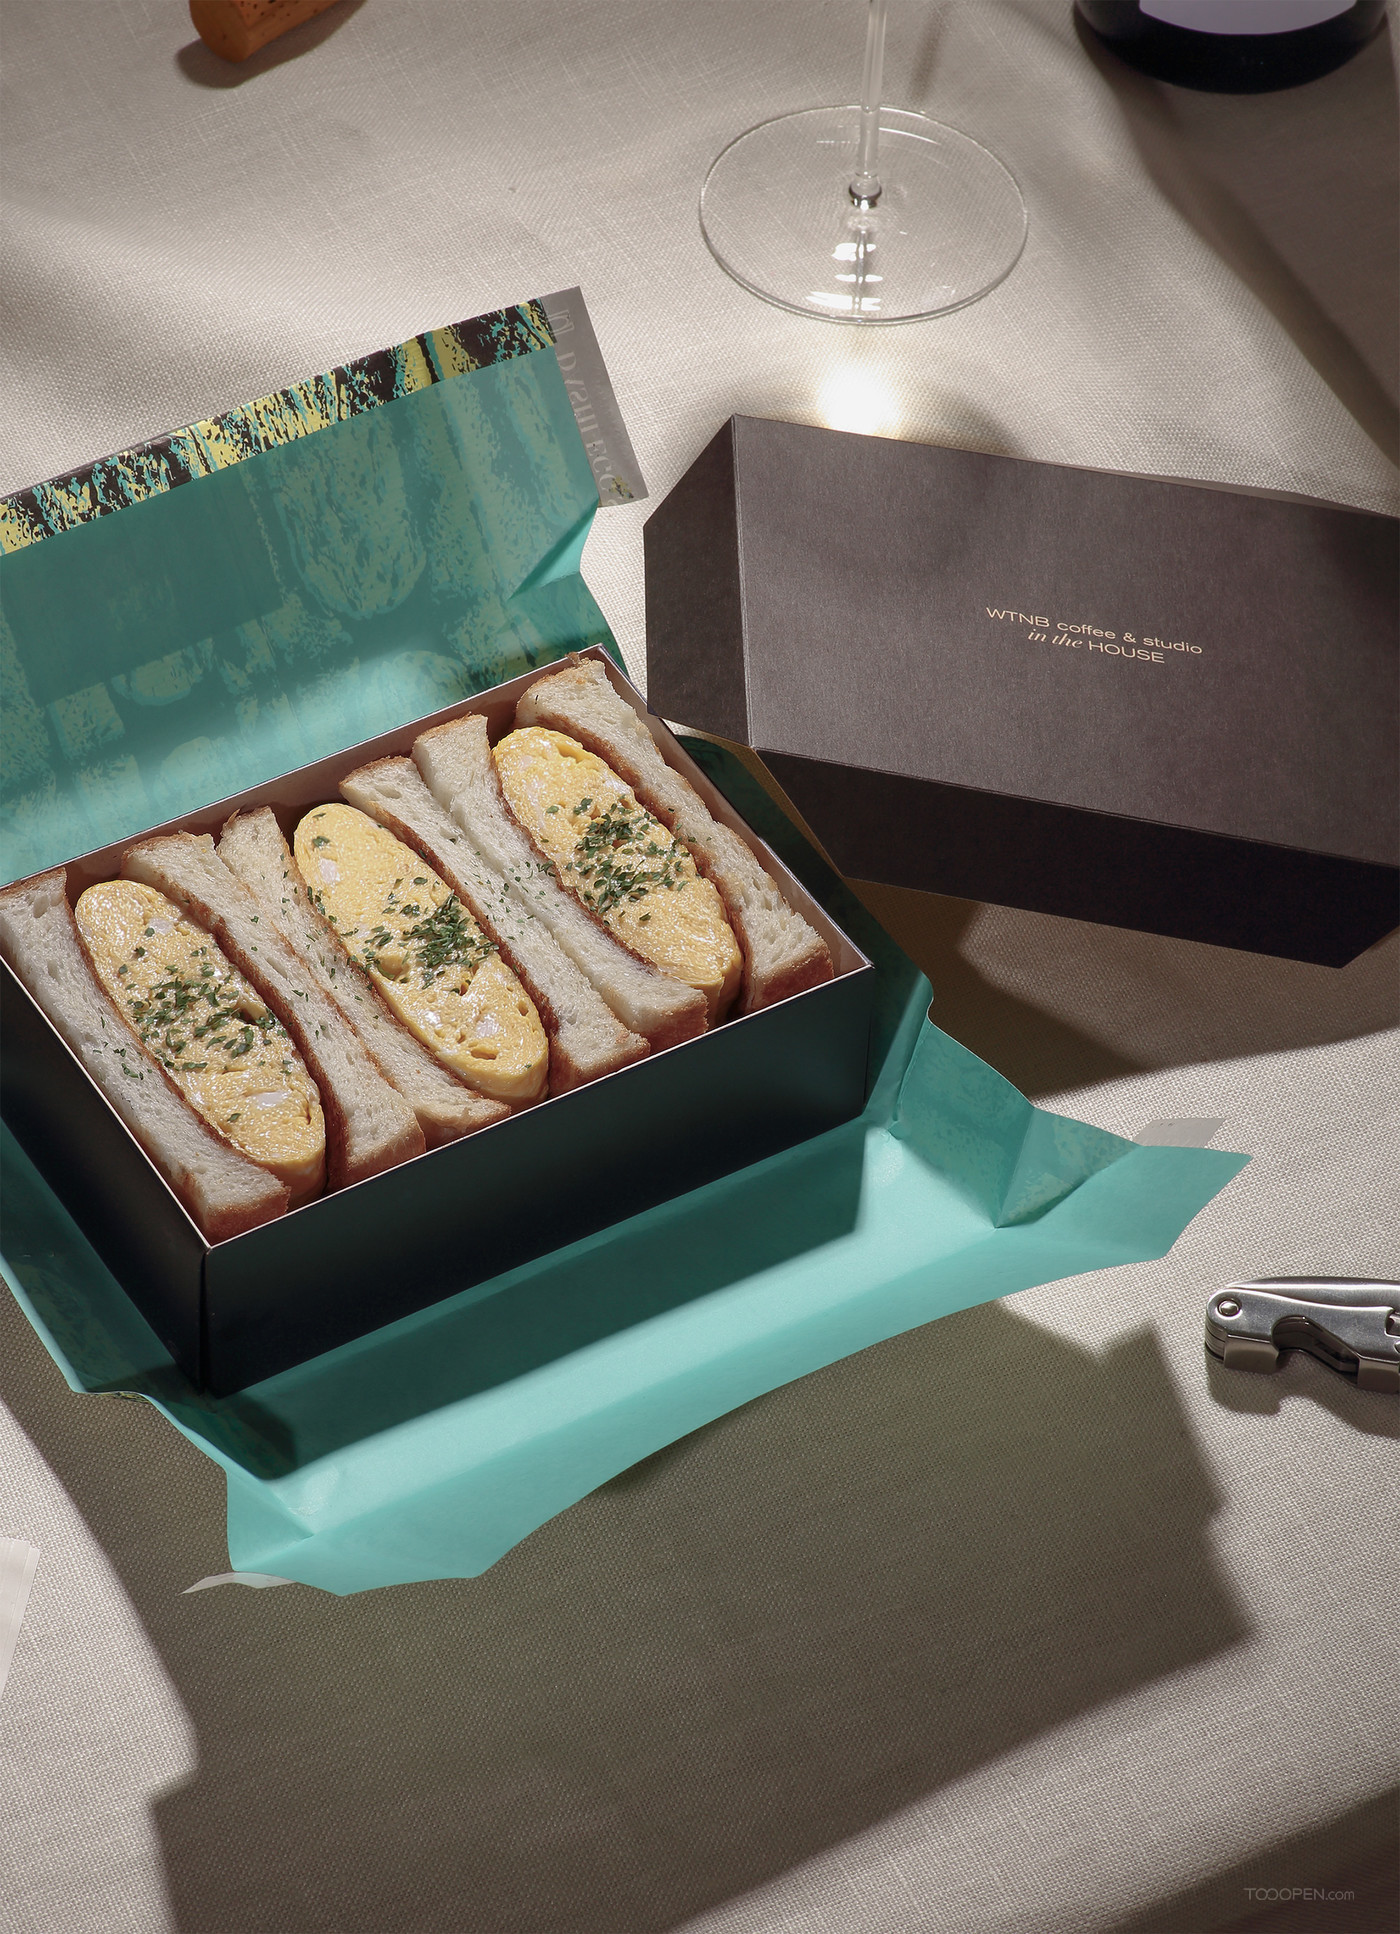 国外美食创意抽象外包装设计三明治外带设计欣赏-09